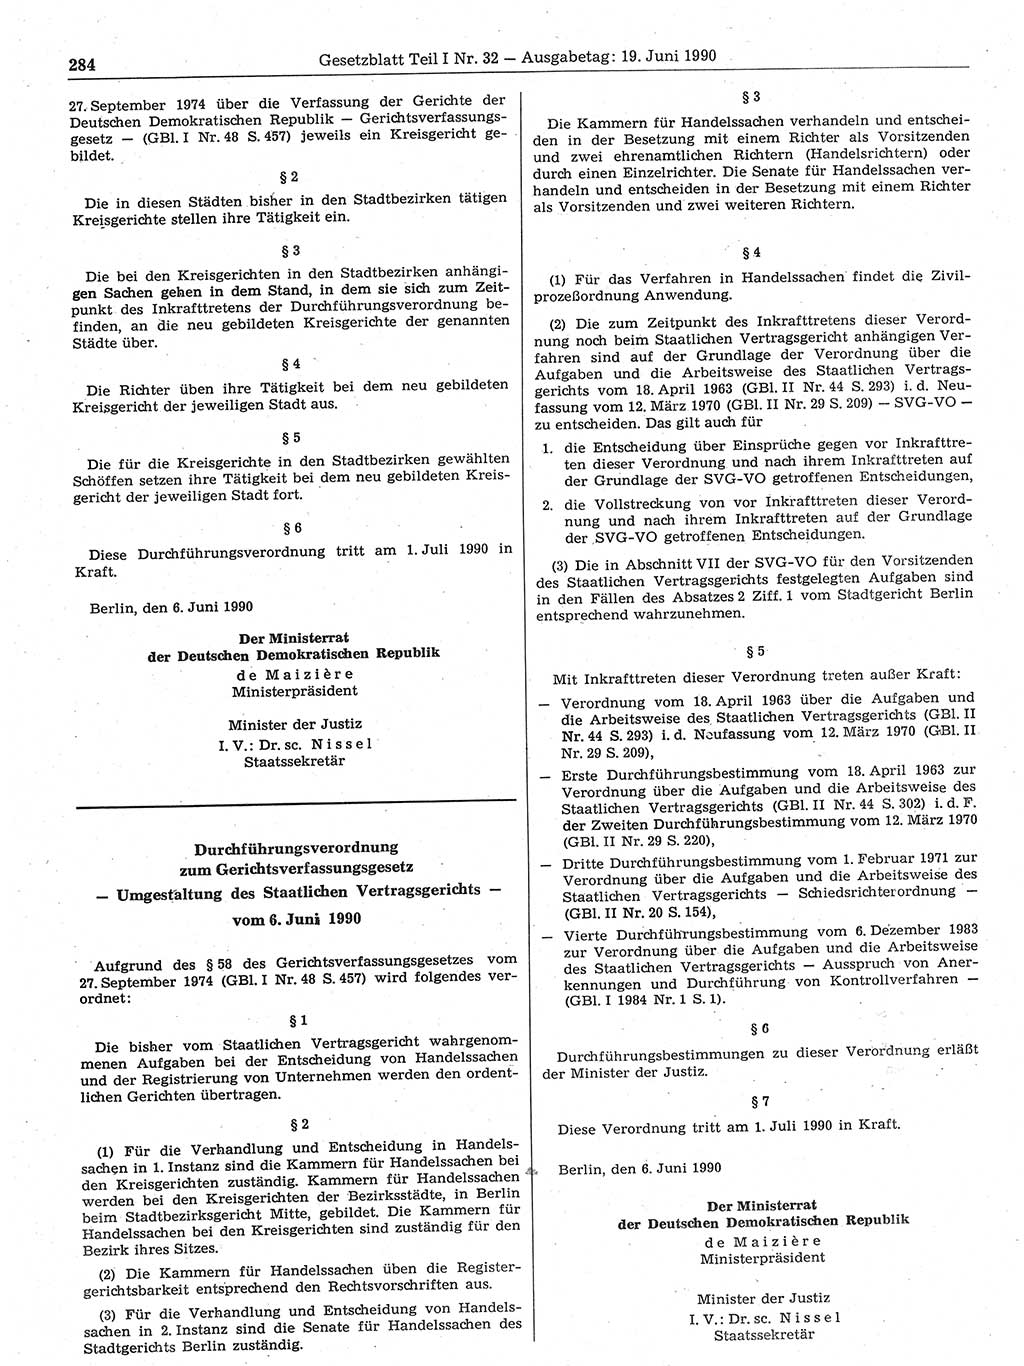 Gesetzblatt (GBl.) der Deutschen Demokratischen Republik (DDR) Teil Ⅰ 1990, Seite 284 (GBl. DDR Ⅰ 1990, S. 284)